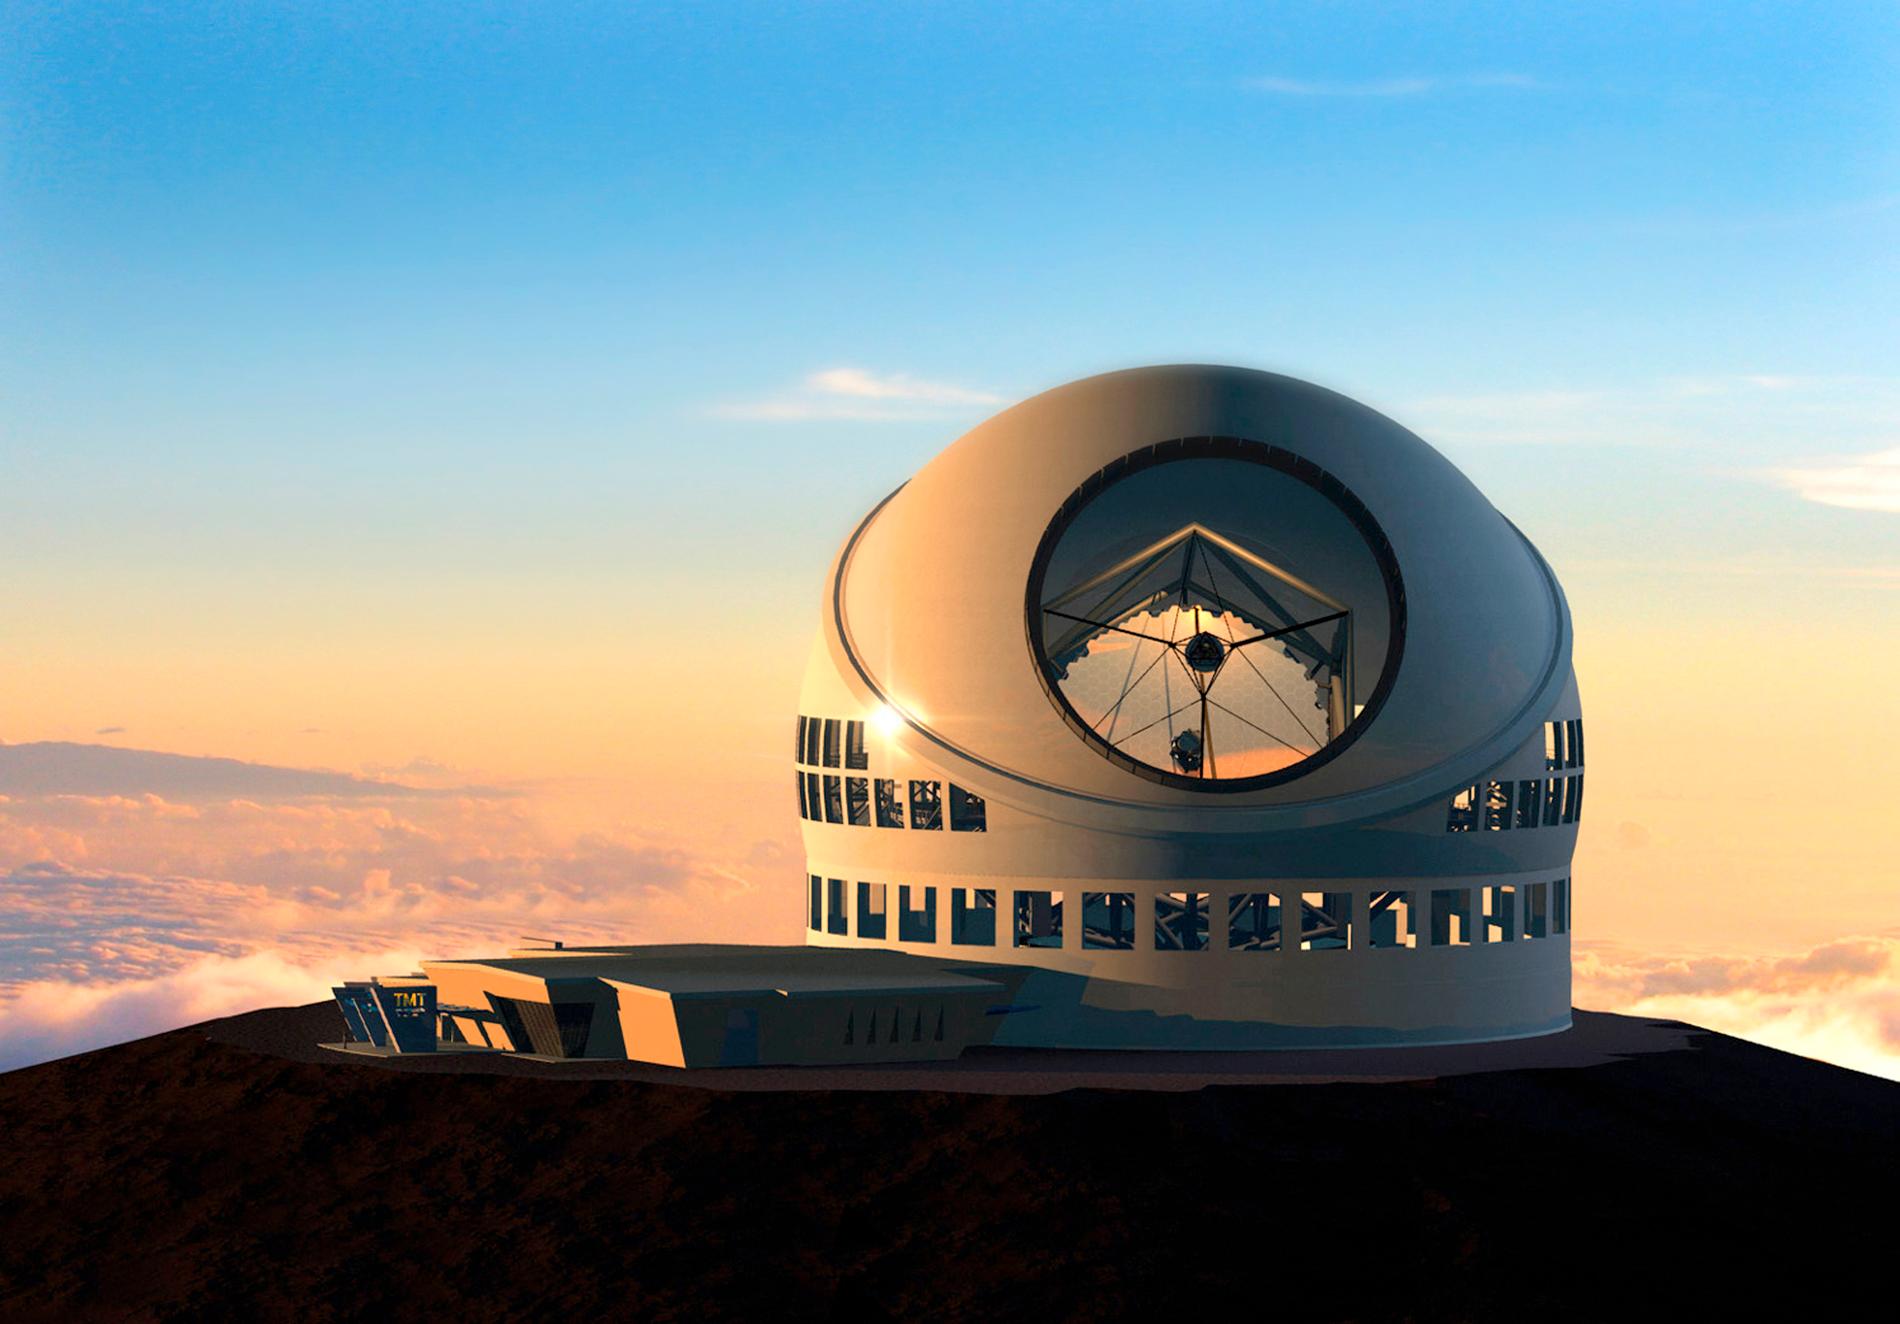 Så här kommer teleskopet att se ut när det är klart, enligt en illustration som tagits fram. Arkivbild